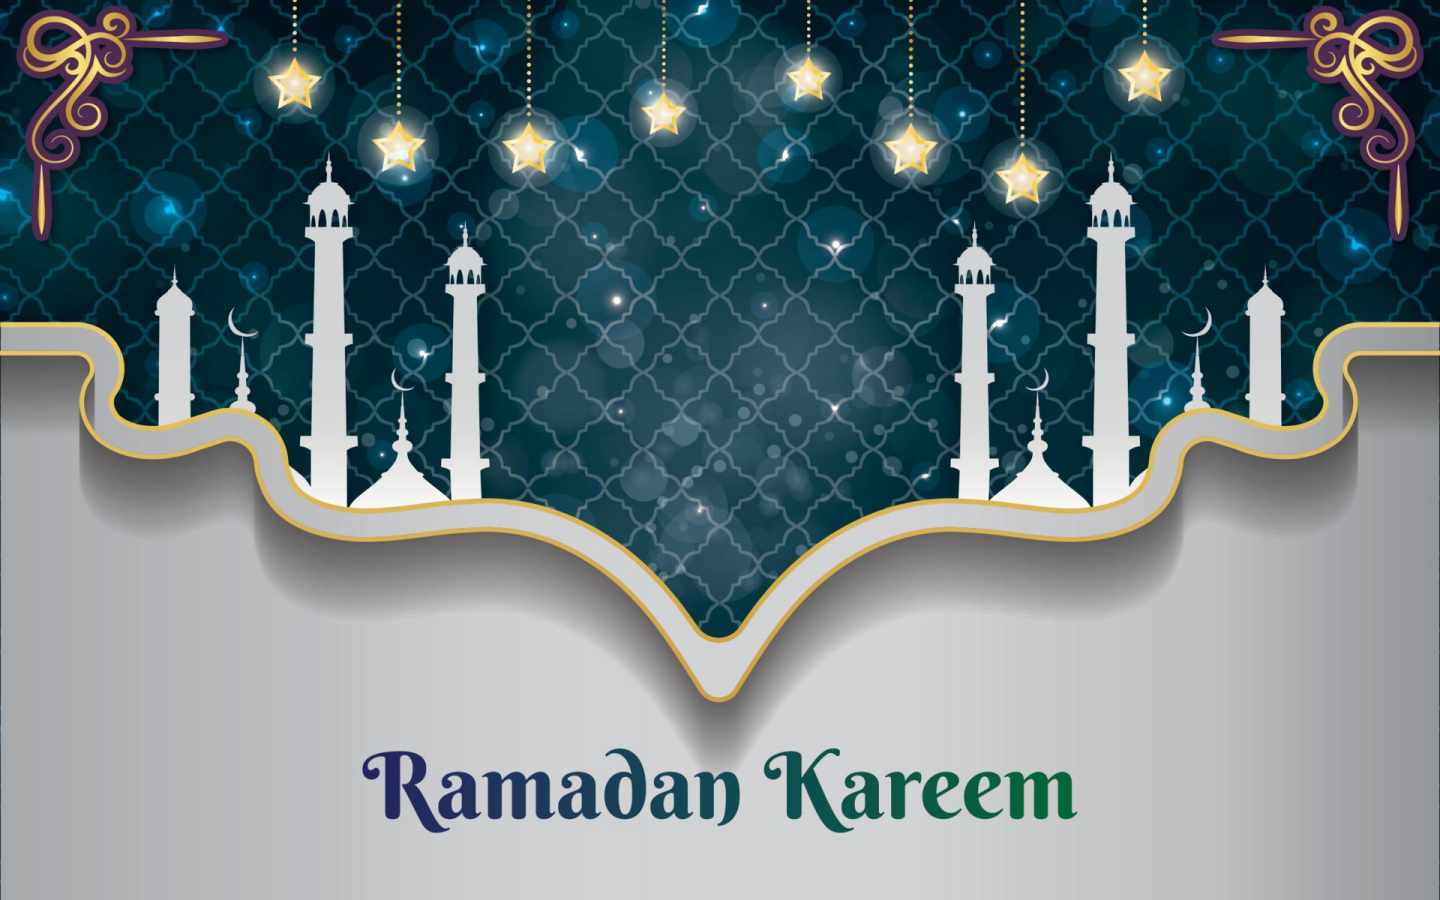 Celebrail Ramadan Quest'anno Con Stile Con Uno Splendido Sfondo Per Il Ramadan.